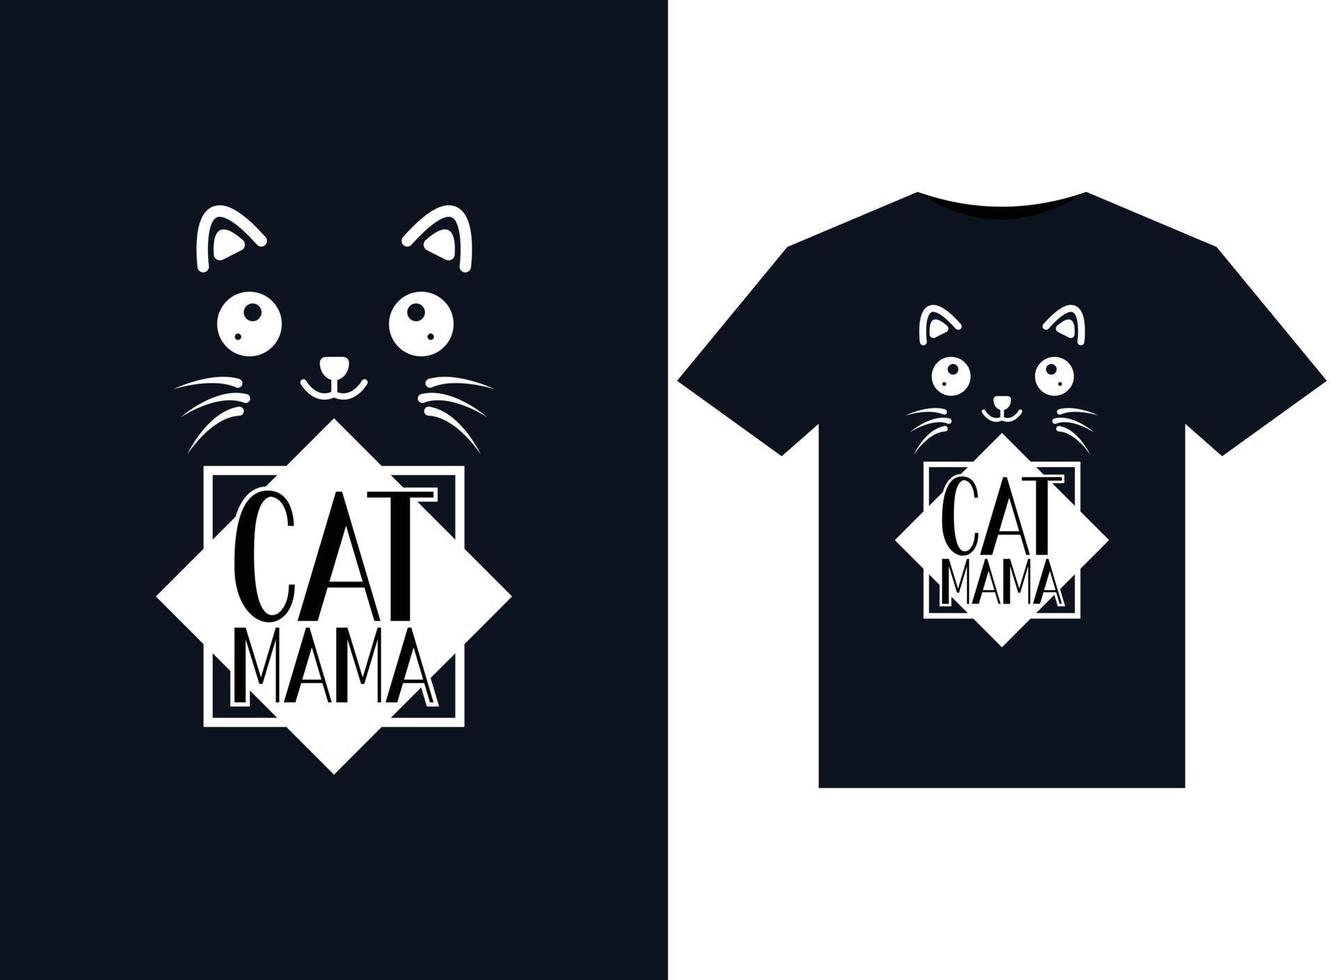 ilustrações de mamãe de gato para design de camisetas prontas para impressão vetor